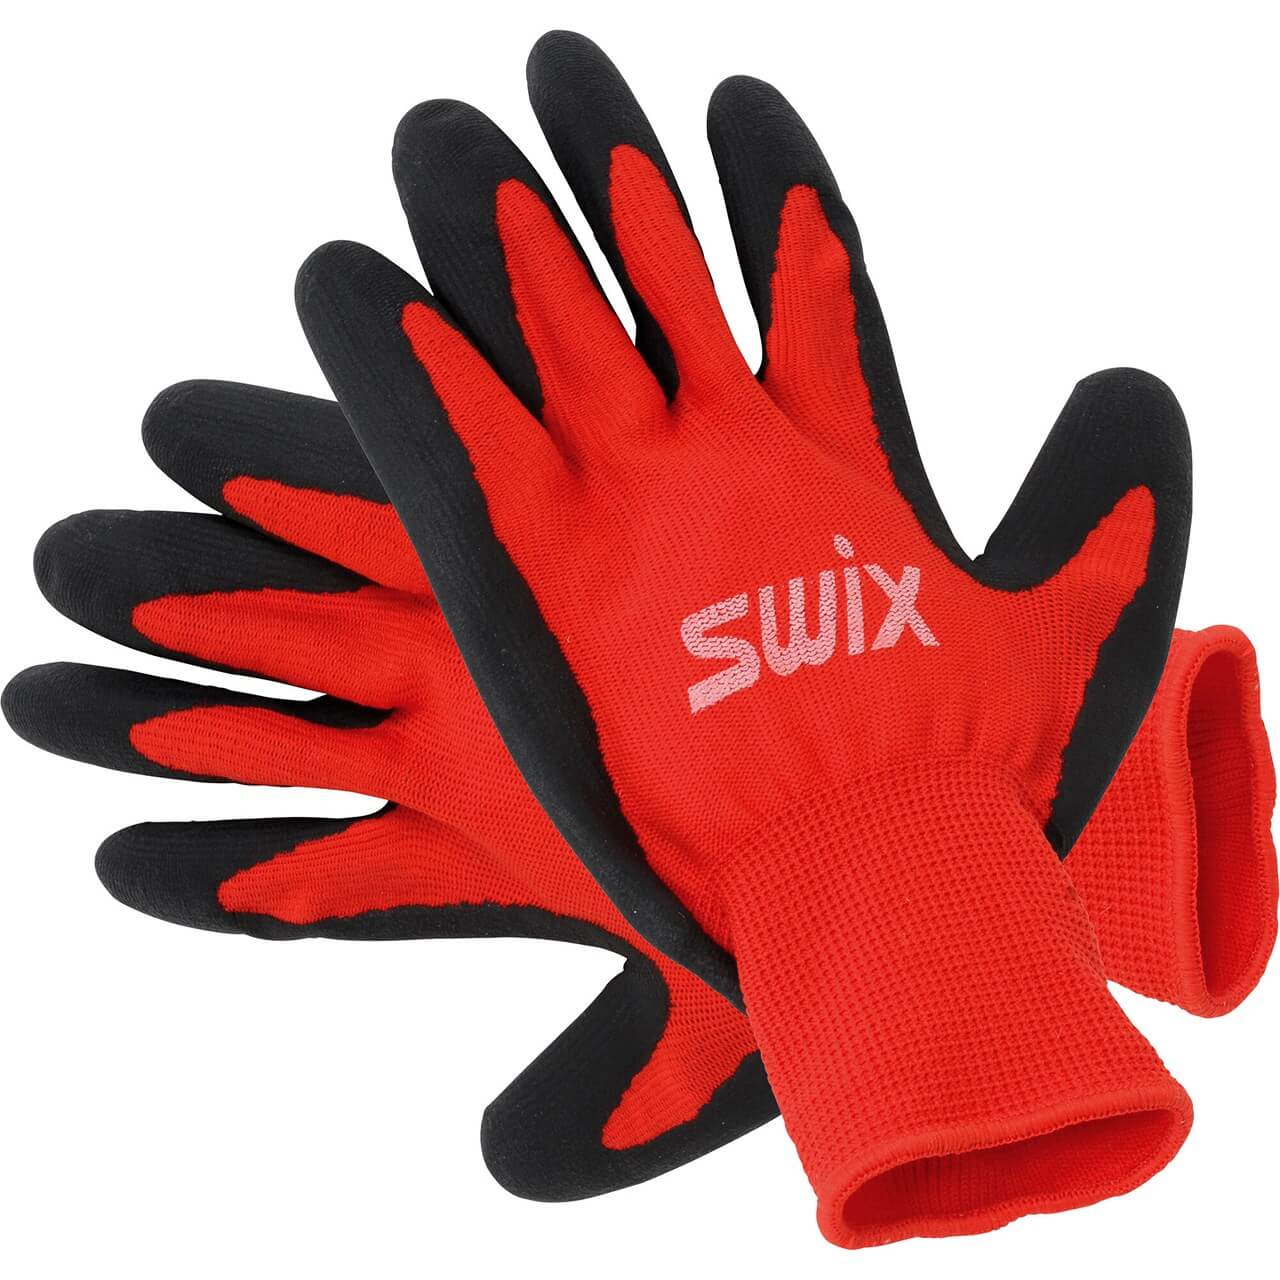 Swix Suksivoiteet R196 Tuning glove Treeline Outdoors